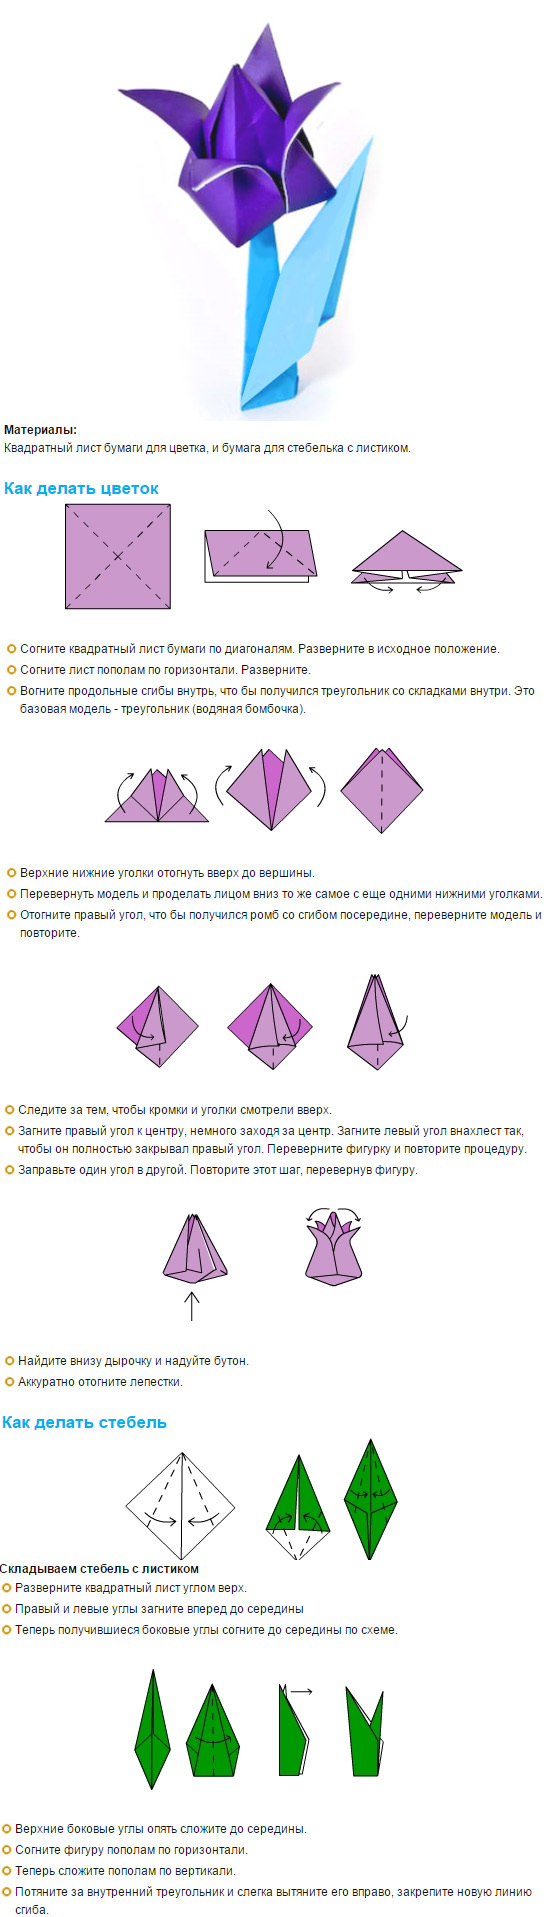 Как сделать тюльпан из бумаги поэтапно. Тюльпан оригами схема пошагово. Схема оригами тюльпана для начинающих. Бумажный тюльпан своими руками из бумаги пошаговая инструкция. Оригами цветок тюльпан схема.